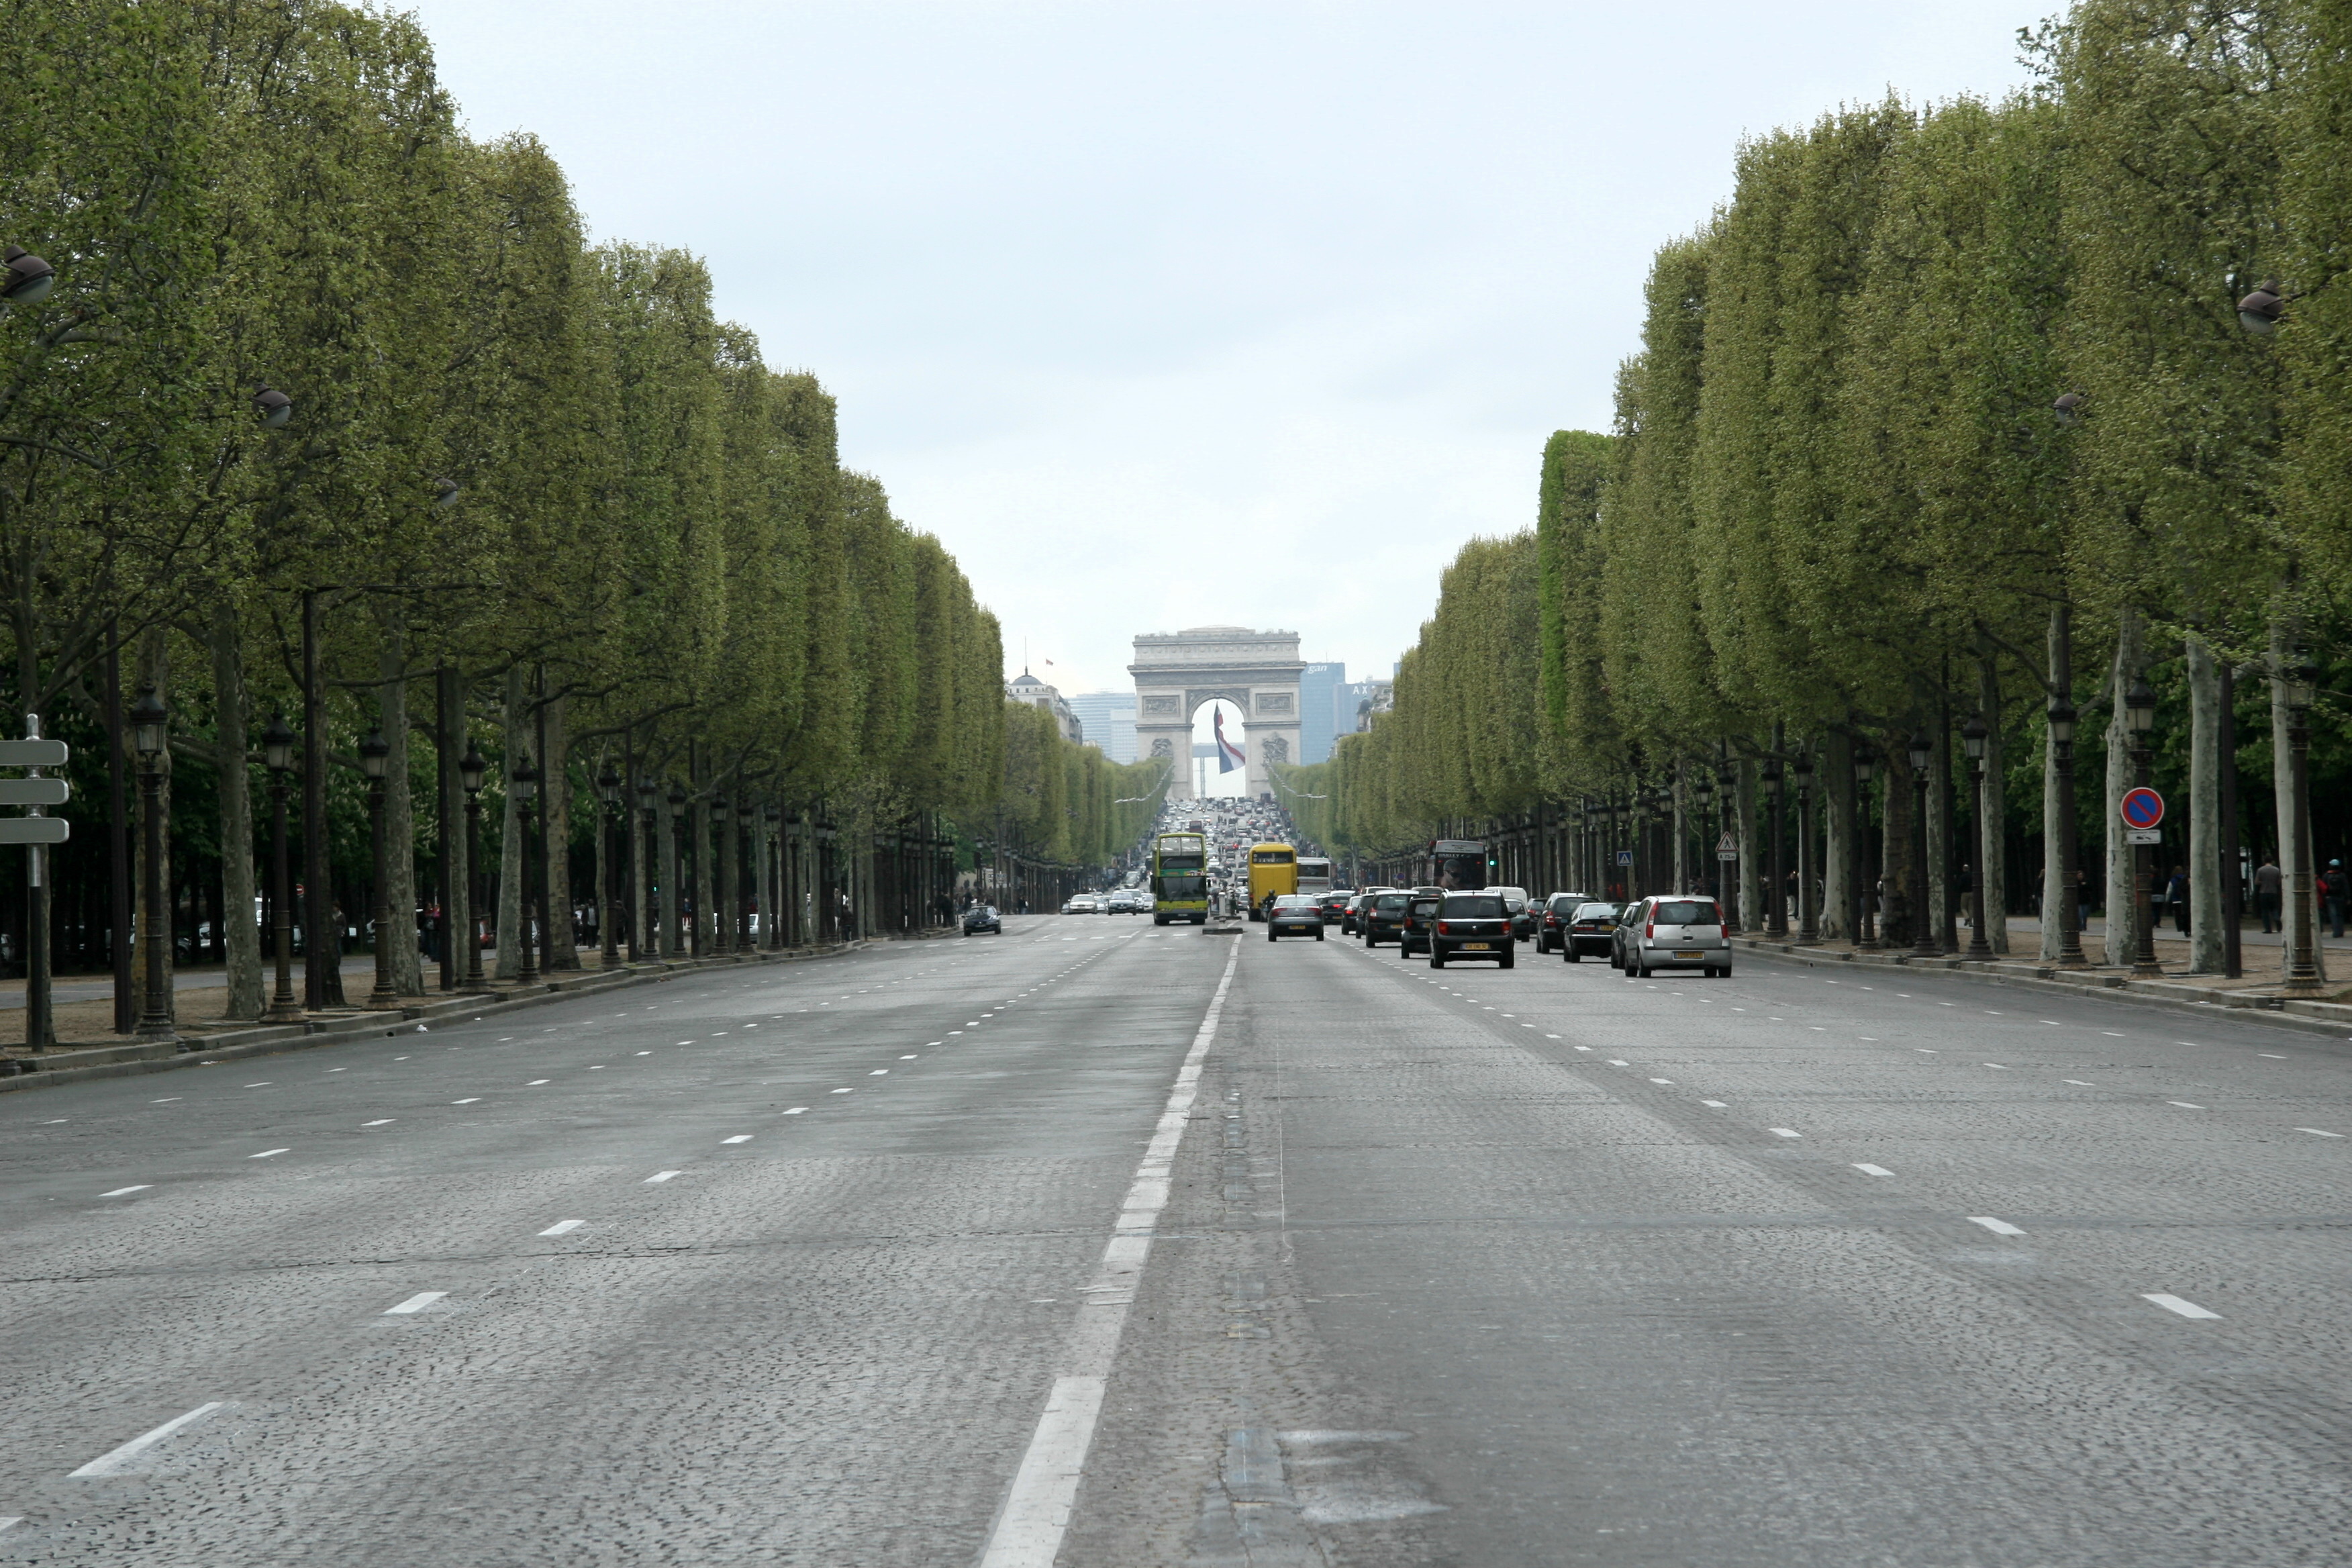 Champs Elyse